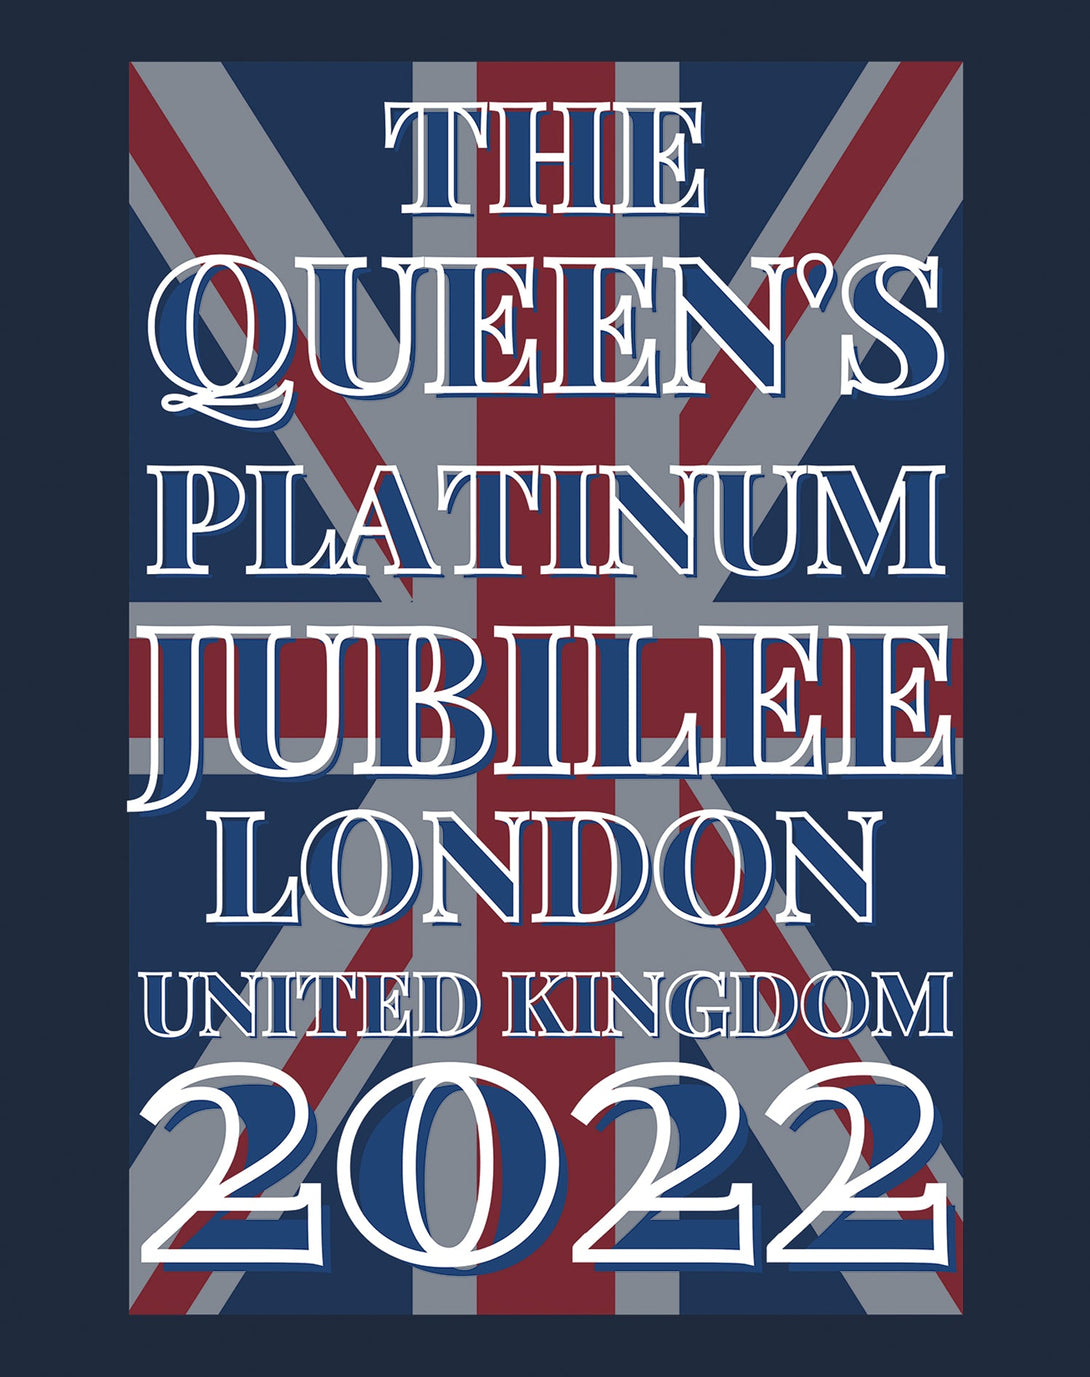 The Queen's Platinum Jubilee London UK Flag Men's Tshirt (Navy)